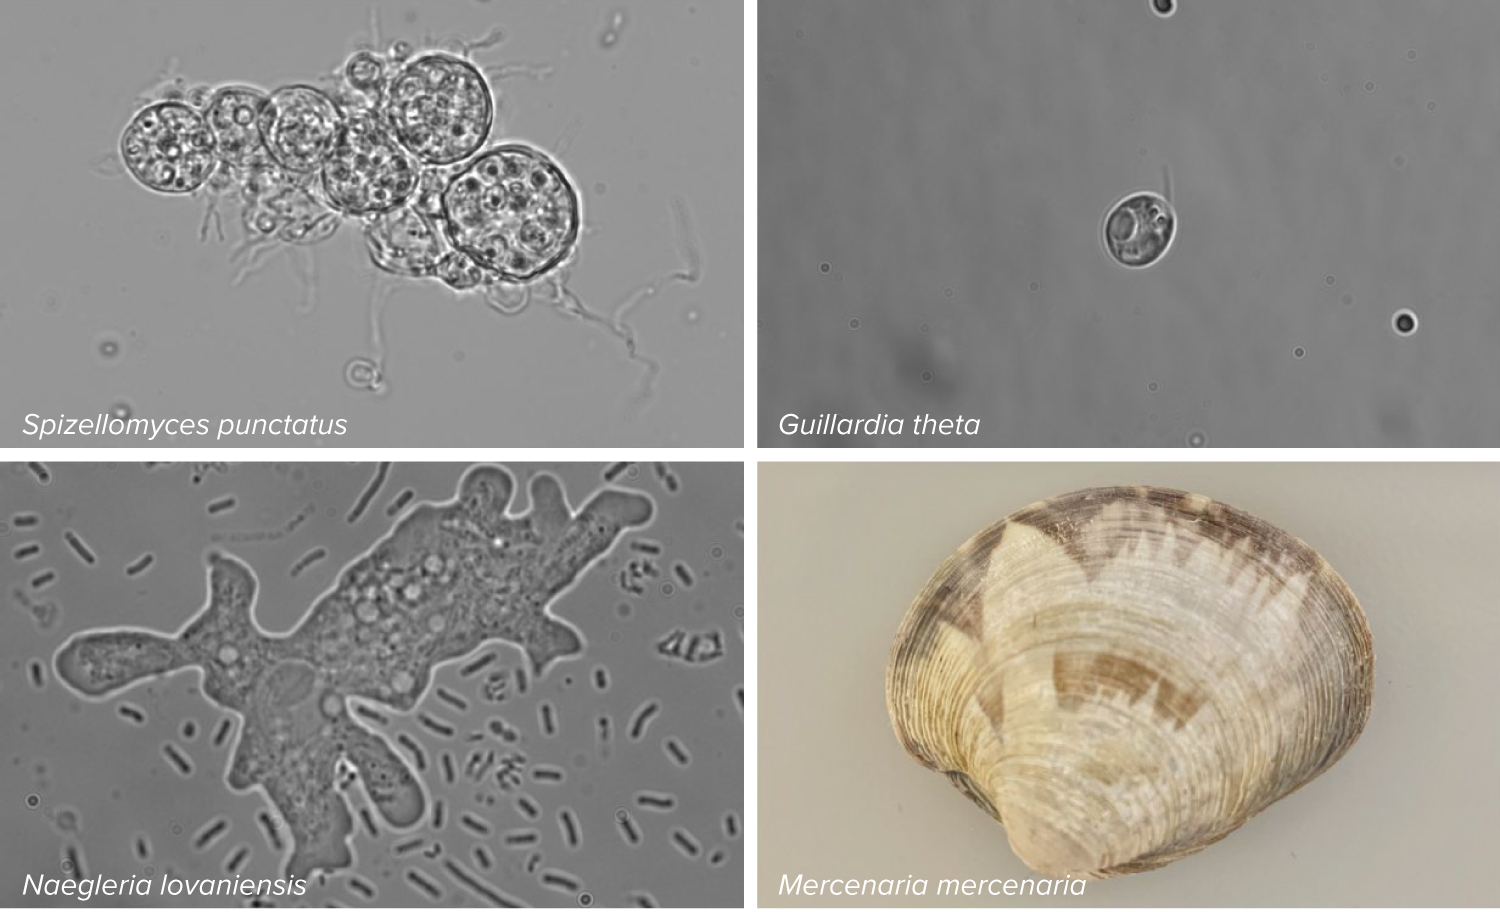 Cuatro fotos dispuestas en un cuadrante muestran tres organismos microscópicos y una almeja.